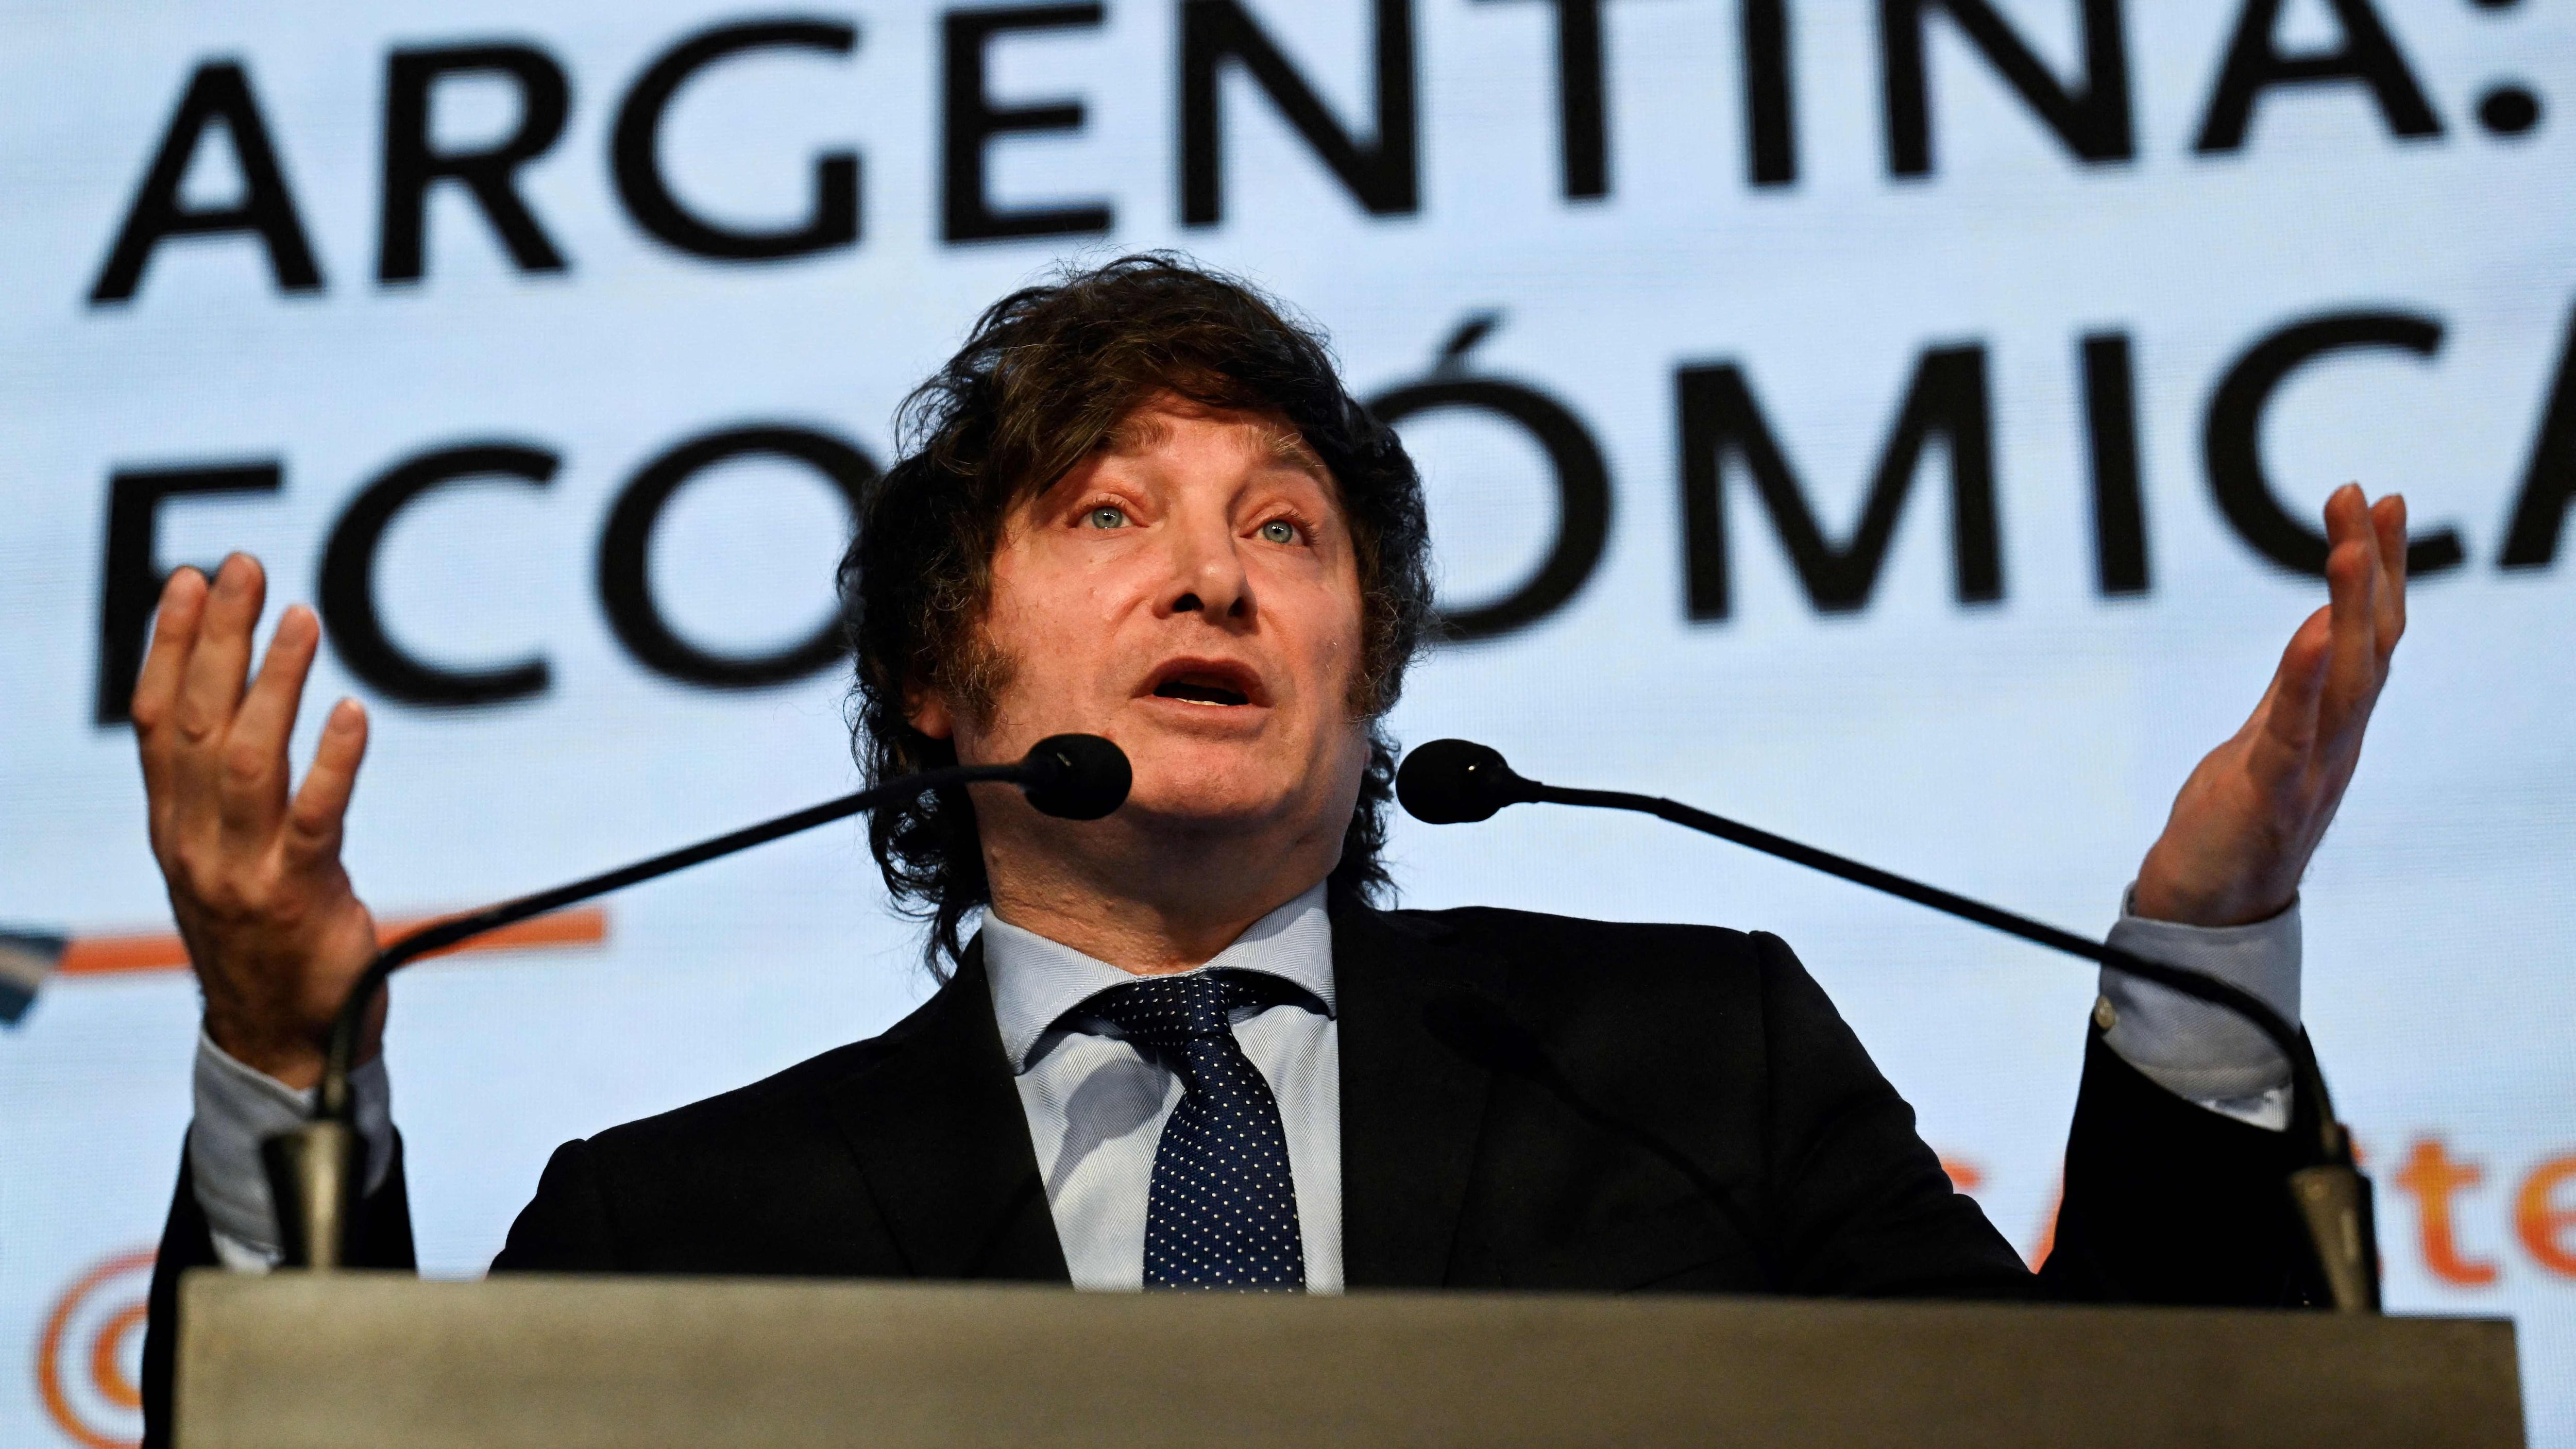 Javier Milei, conocido por sus posturas críticas y controvertidas, se pronunció en redes sociales luego del sorpresivo incremento salarial de los senadores argentinos.